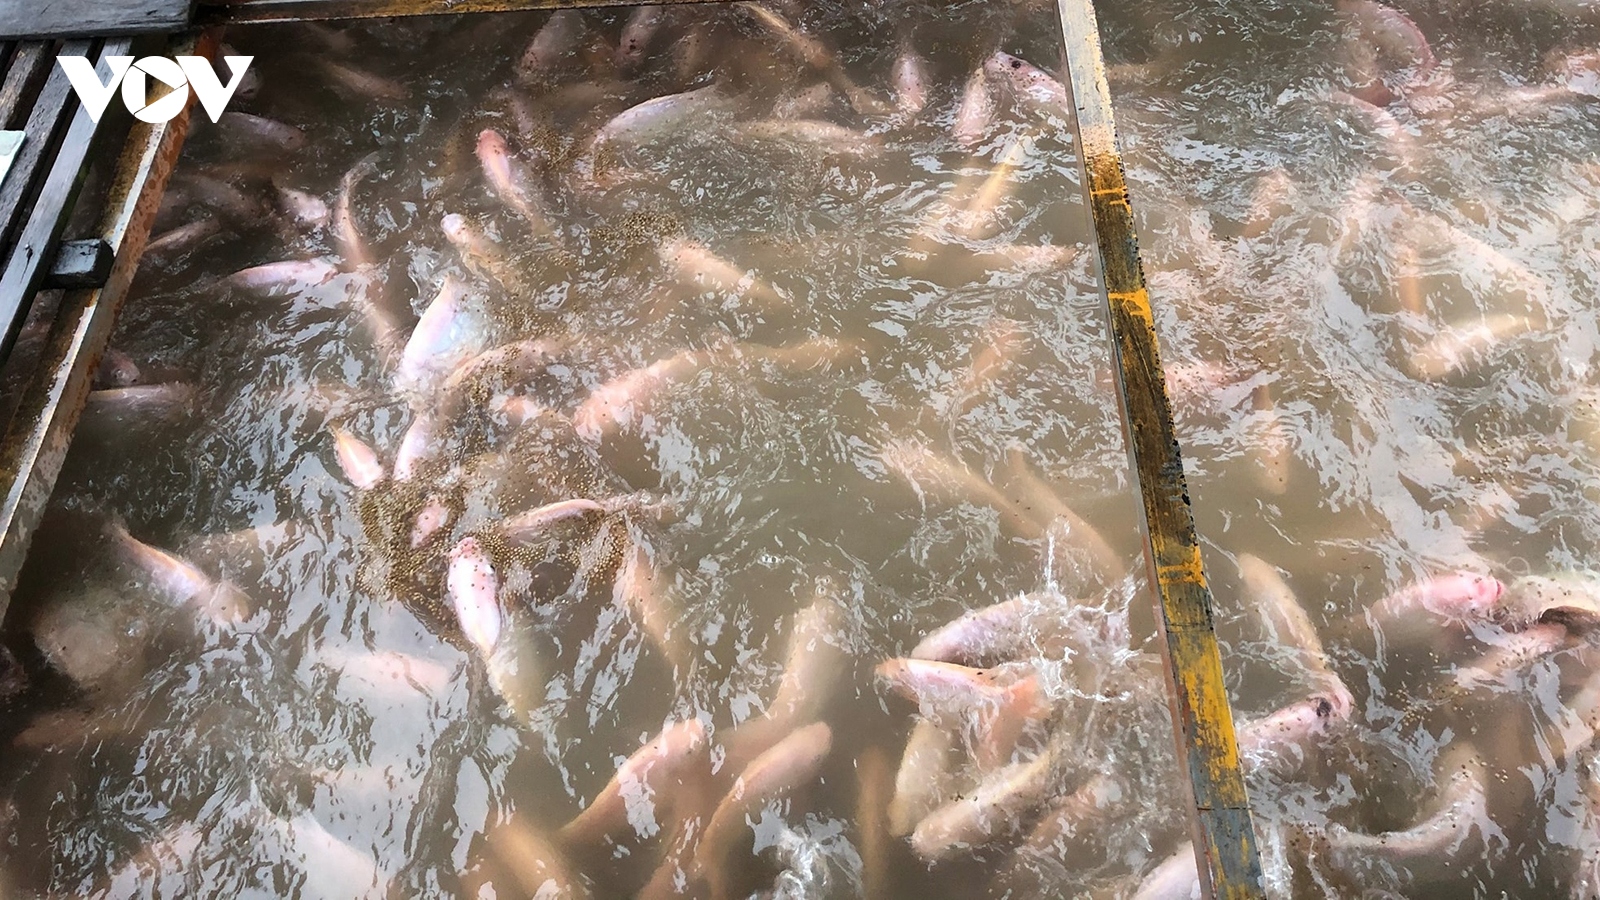 Thương lái ngưng thu mua, người nuôi cá bè ở Tiền Giang điêu đứng